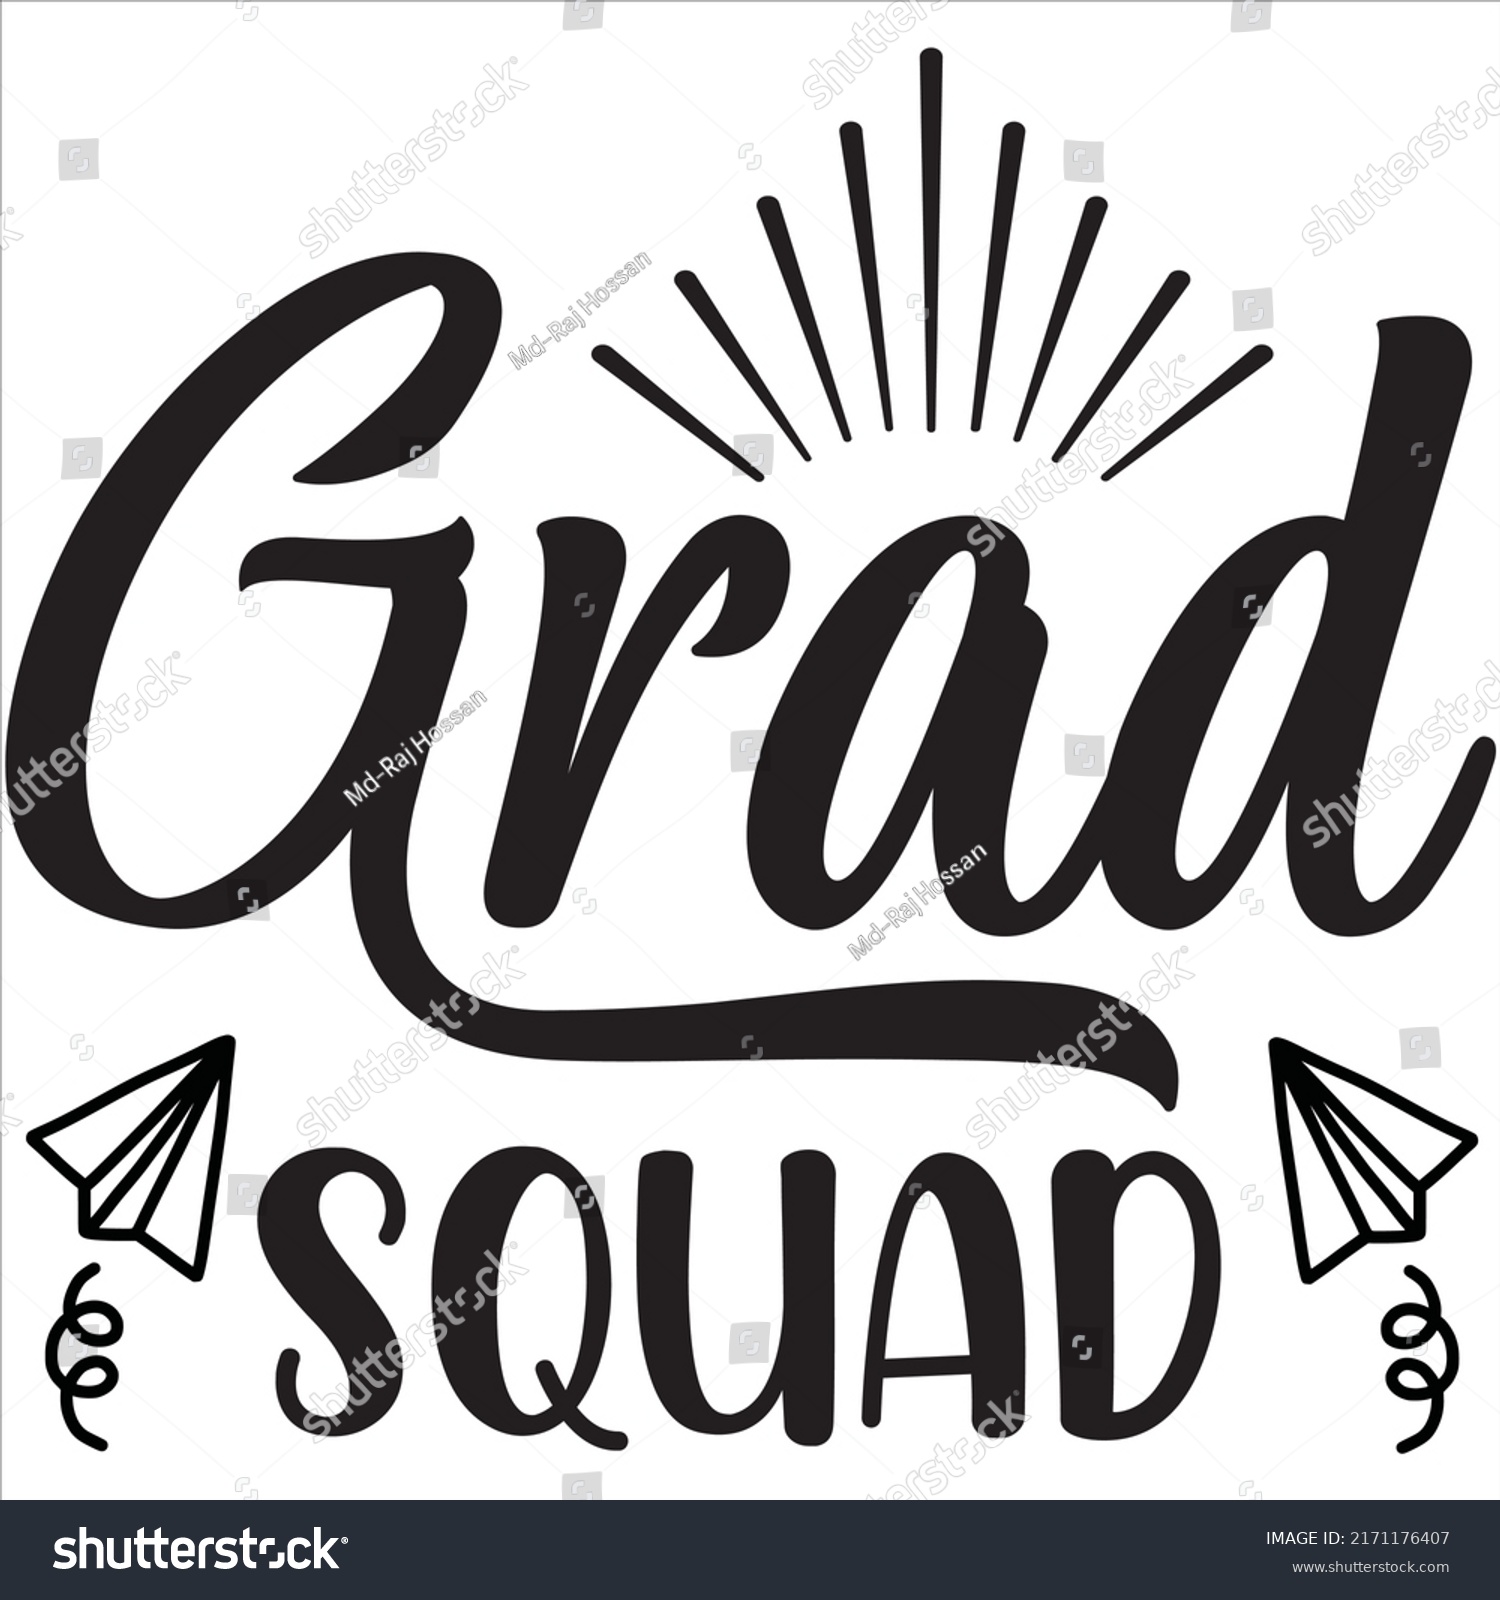 SVG of Grad Squad t-shirt design vector file svg